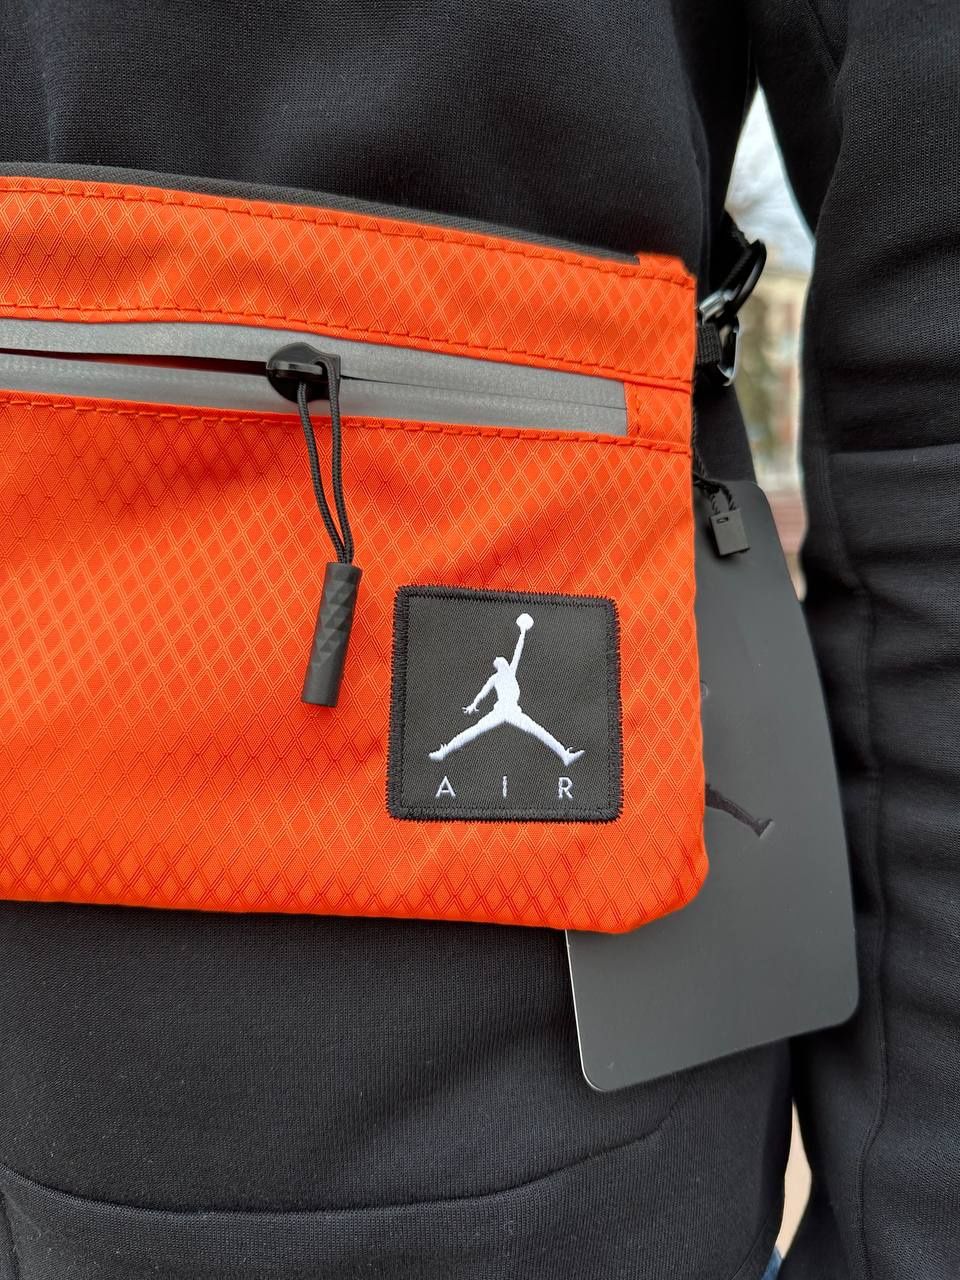 Сумка Jordan - сумка на кожен день бренд Jordan